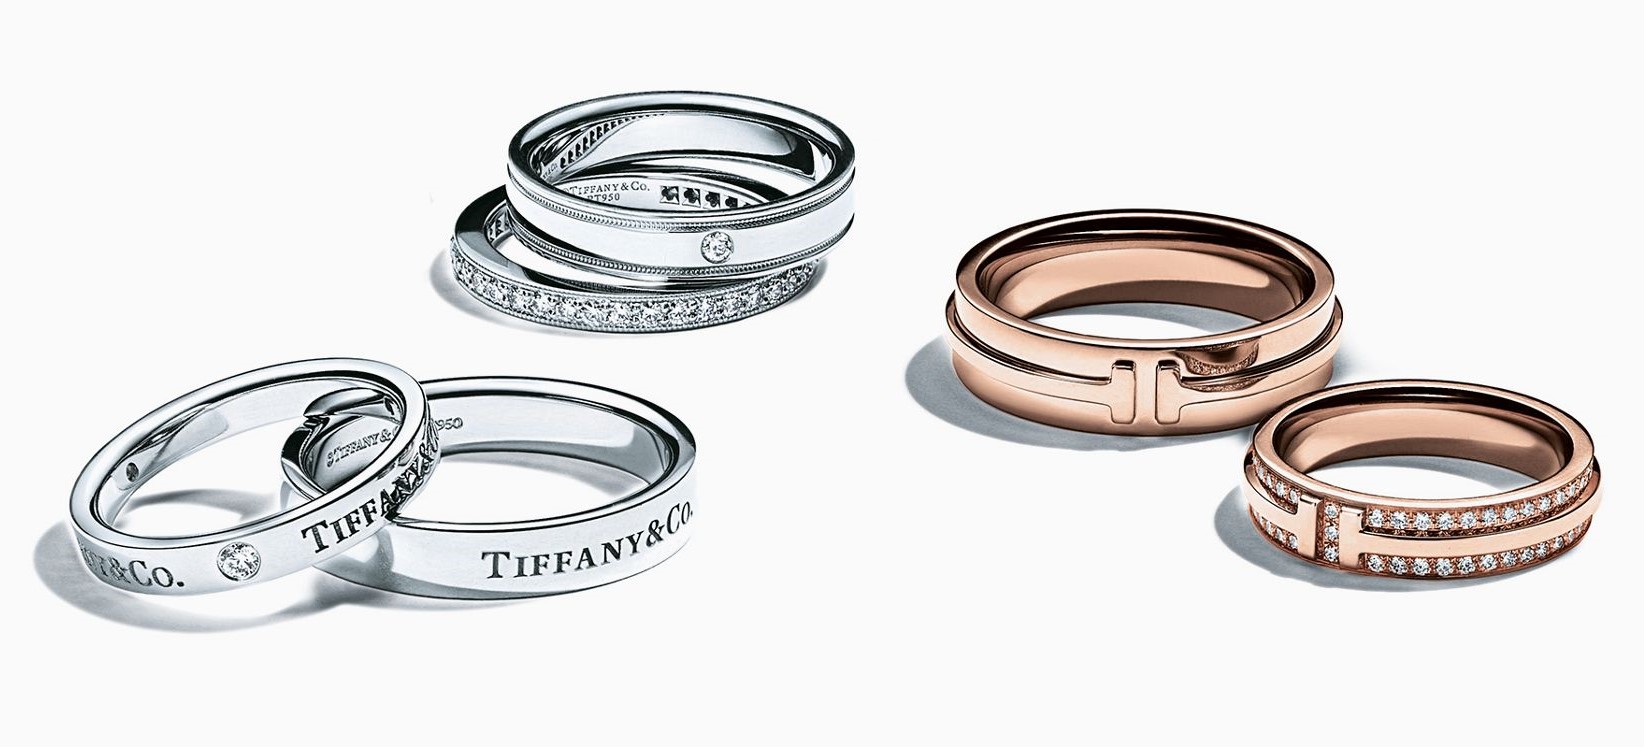 Обручальные кольца Tiffany co